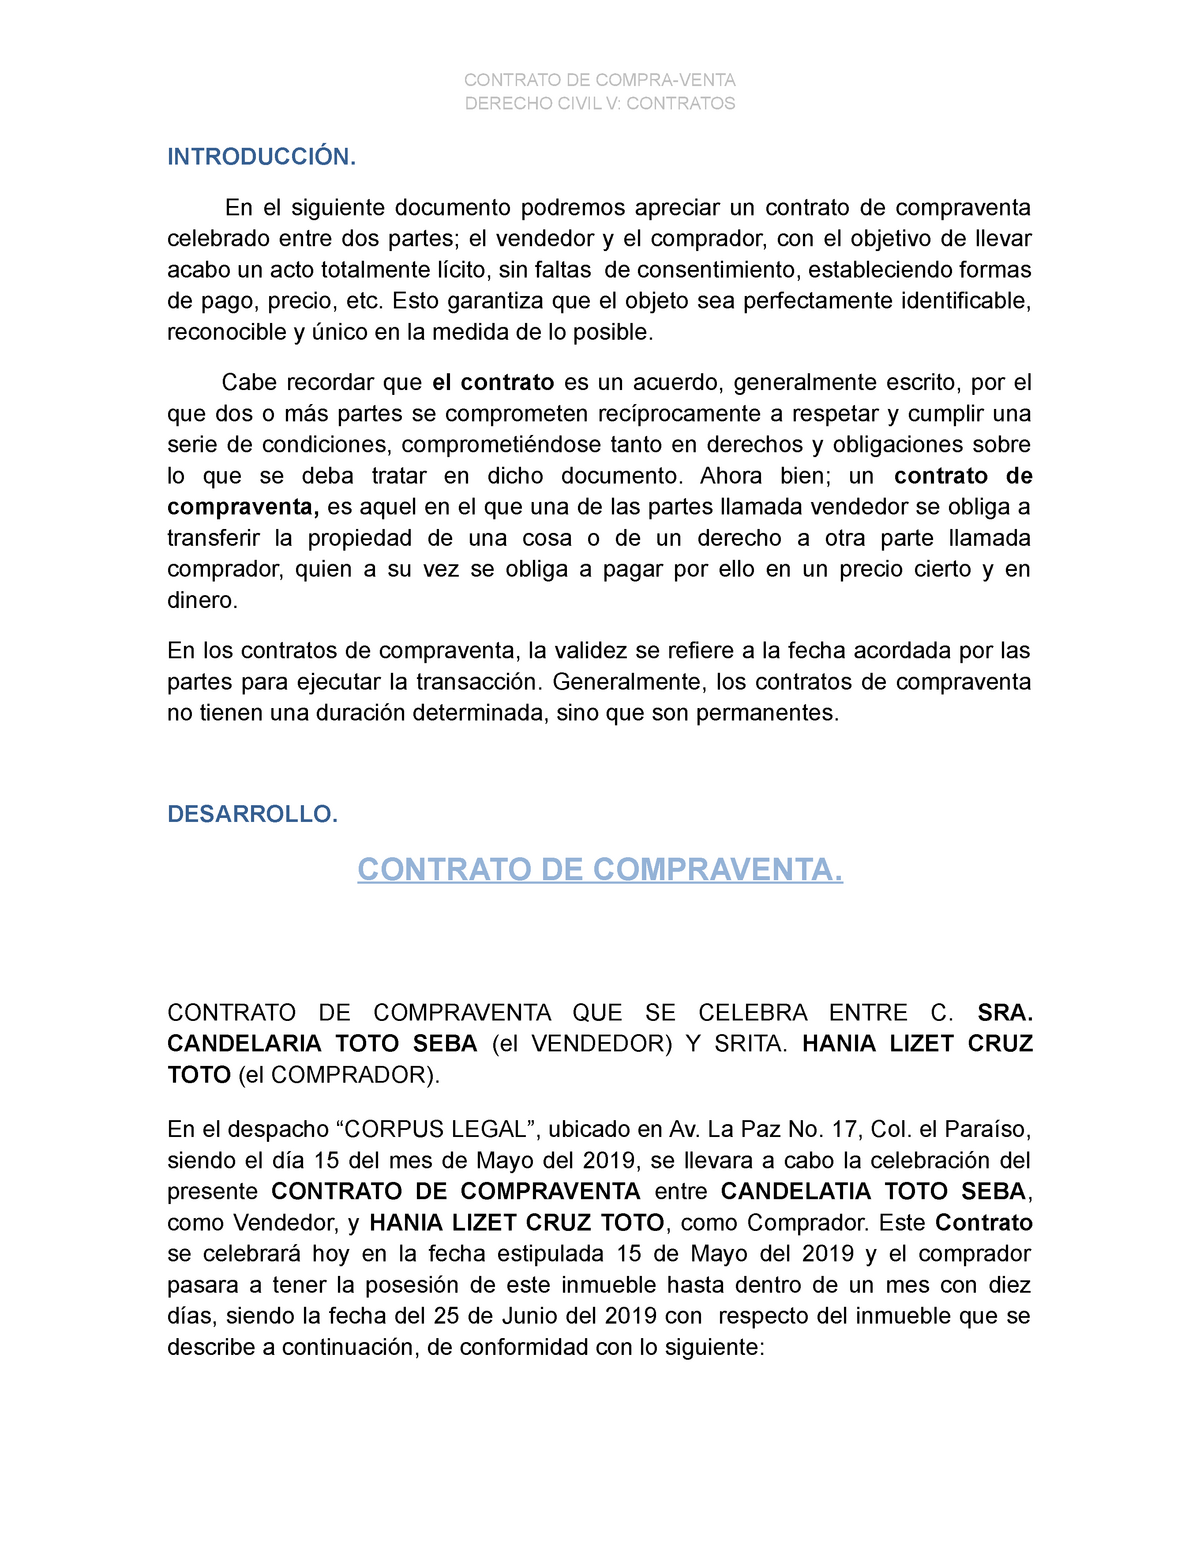 Civil V Contrato De Compraventa Derecho Civil V Contratos IntroducciÓn En El Siguiente 8299